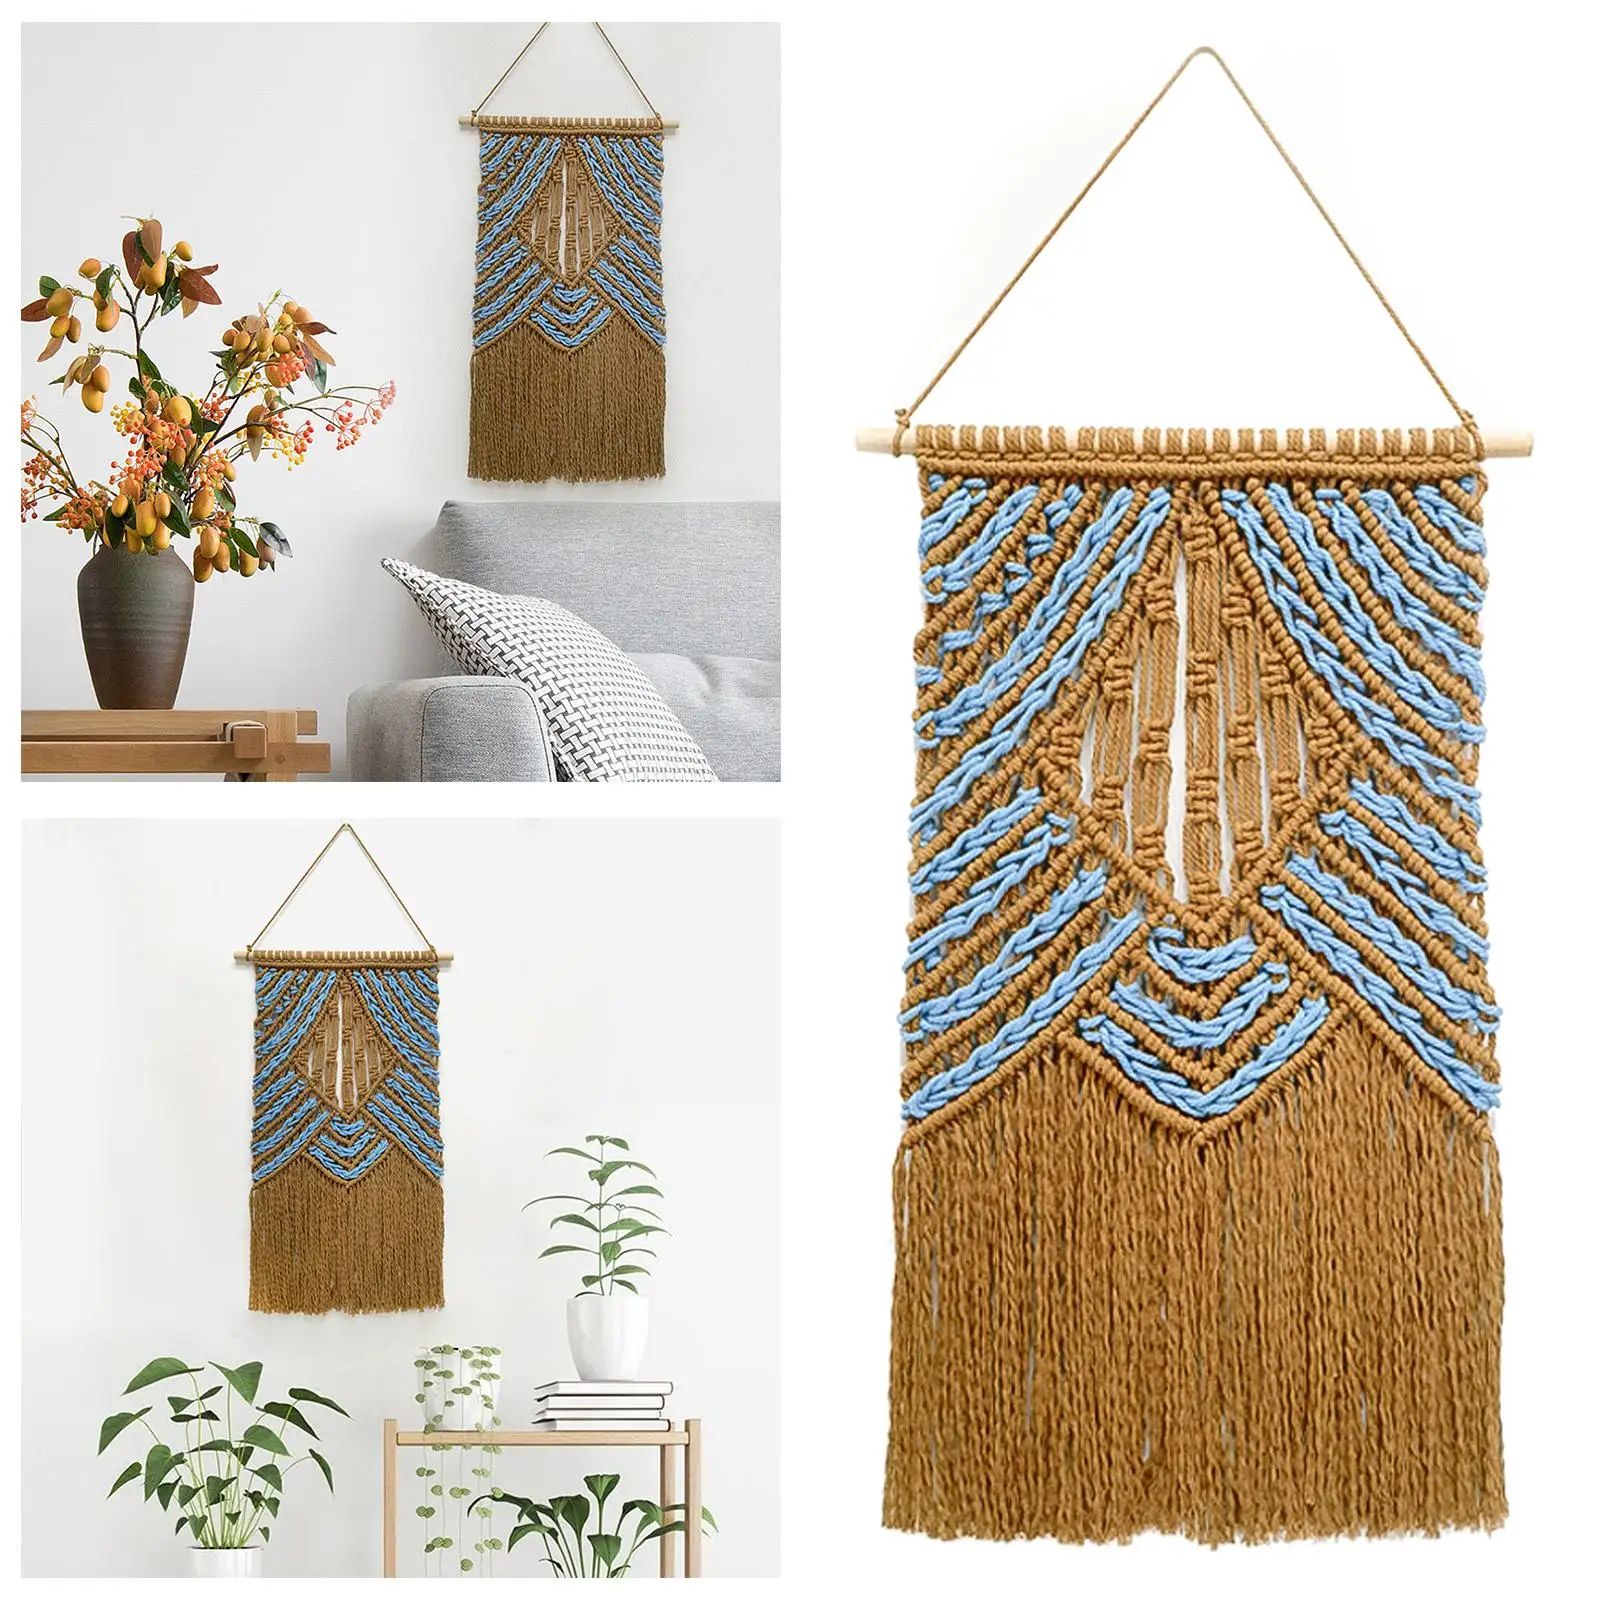 1* Wall Hanging Boho Handmade Kit Craft Fringe Handwoven Tapestry for Dorm Ornament Art Living Room Nursery